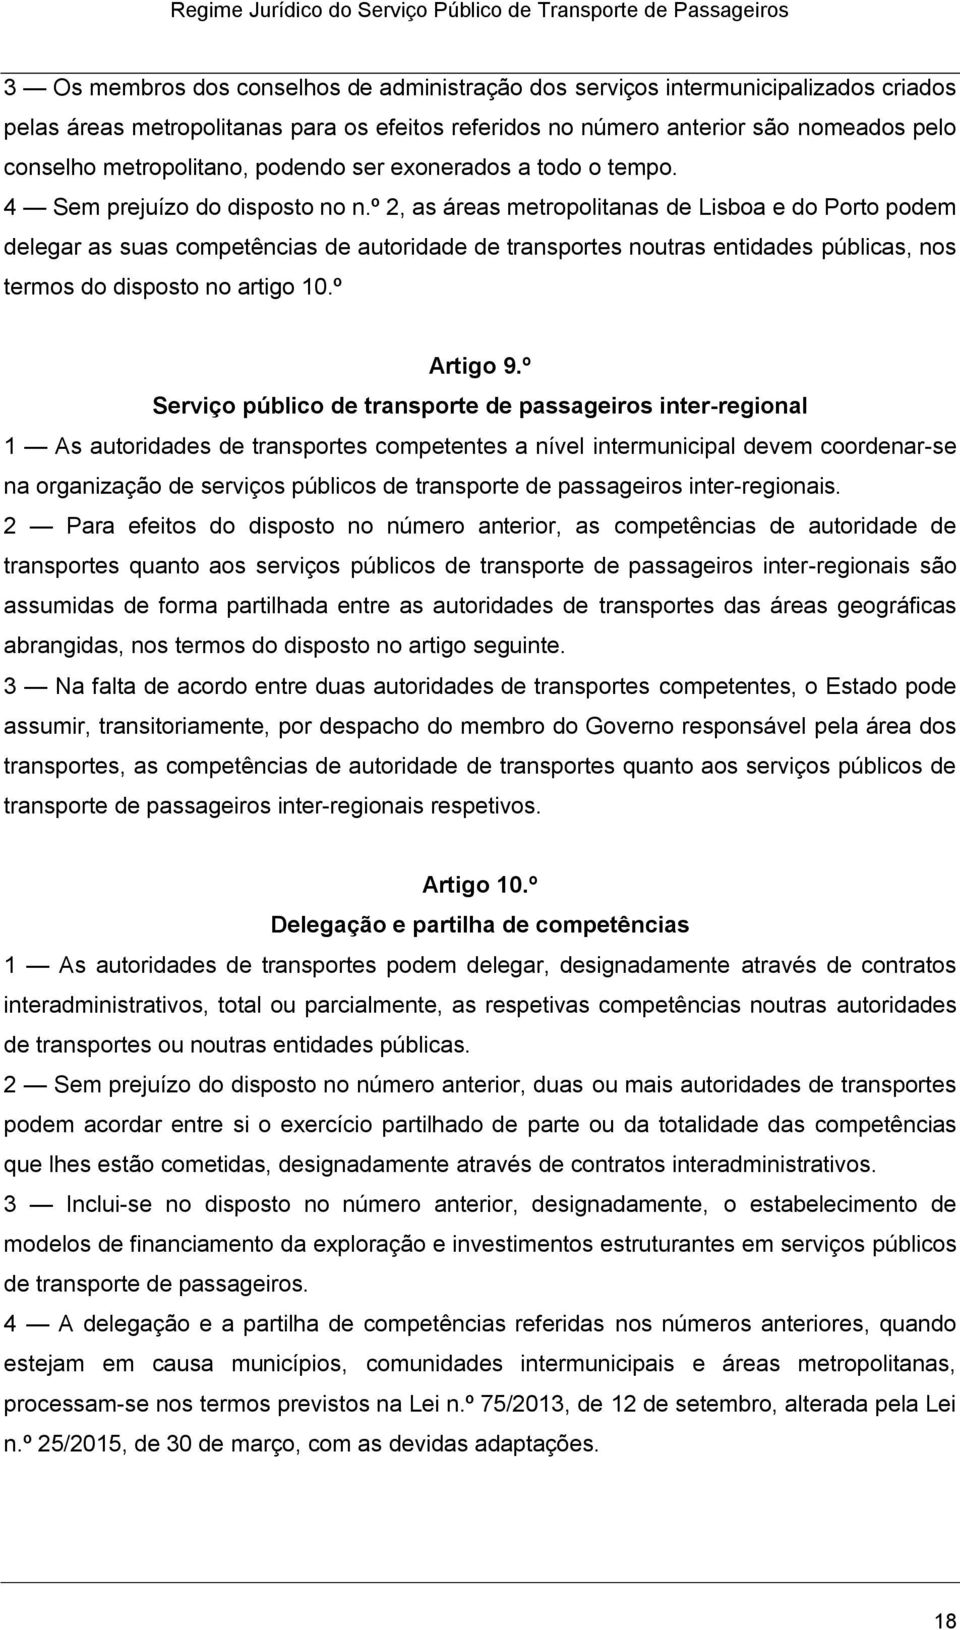 º 2, as áreas metropolitanas de Lisboa e do Porto podem delegar as suas competências de autoridade de transportes noutras entidades públicas, nos termos do disposto no artigo 10.º Artigo 9.